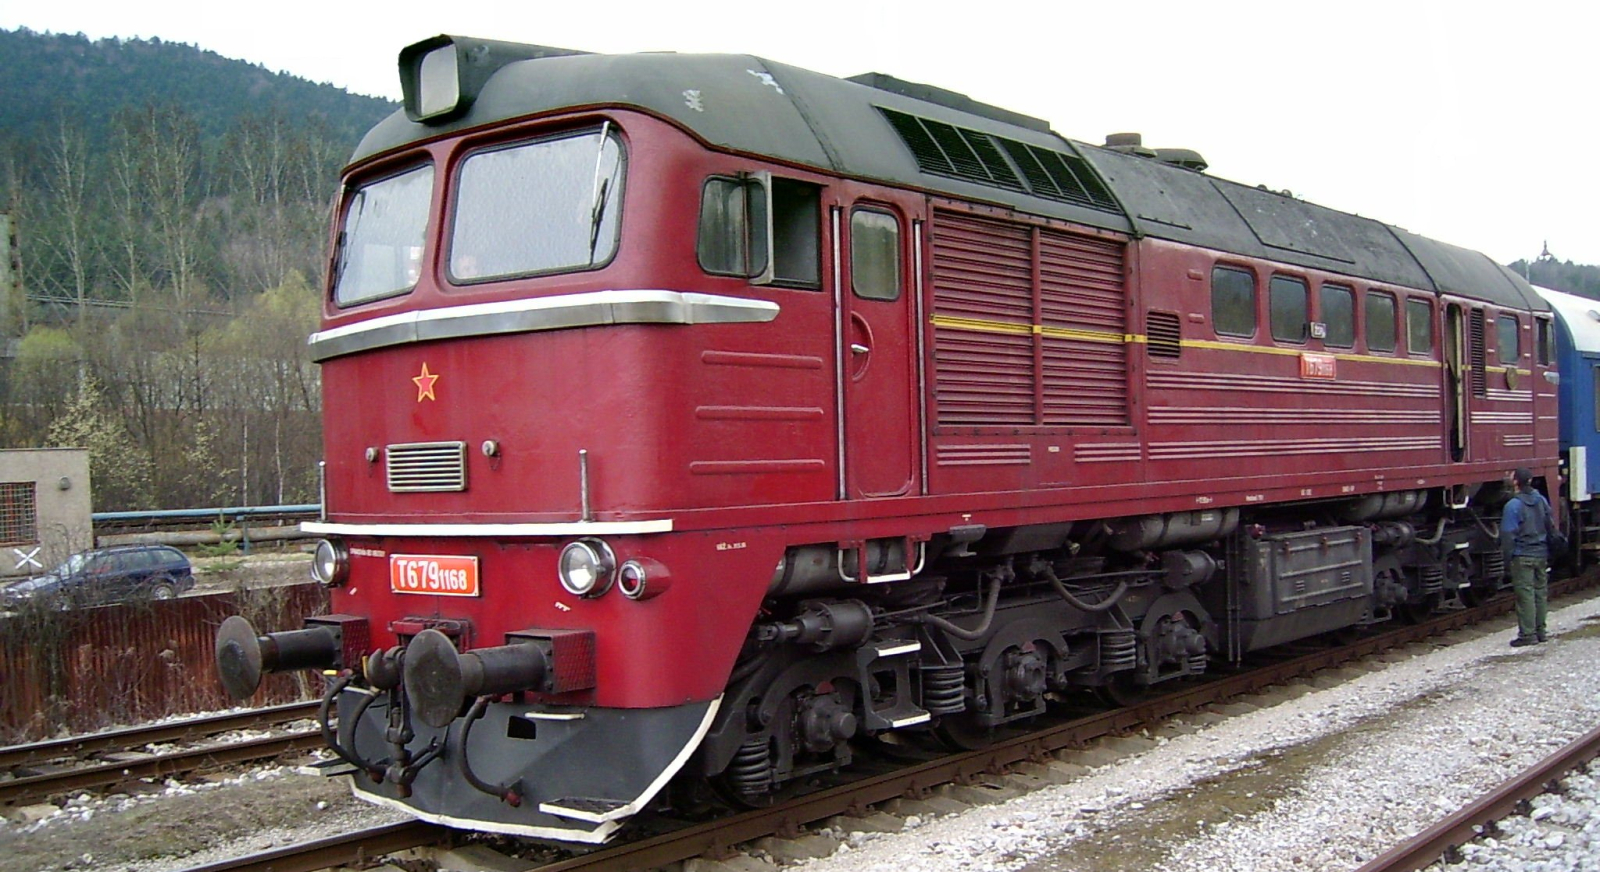 T 679 1168 in April 2006